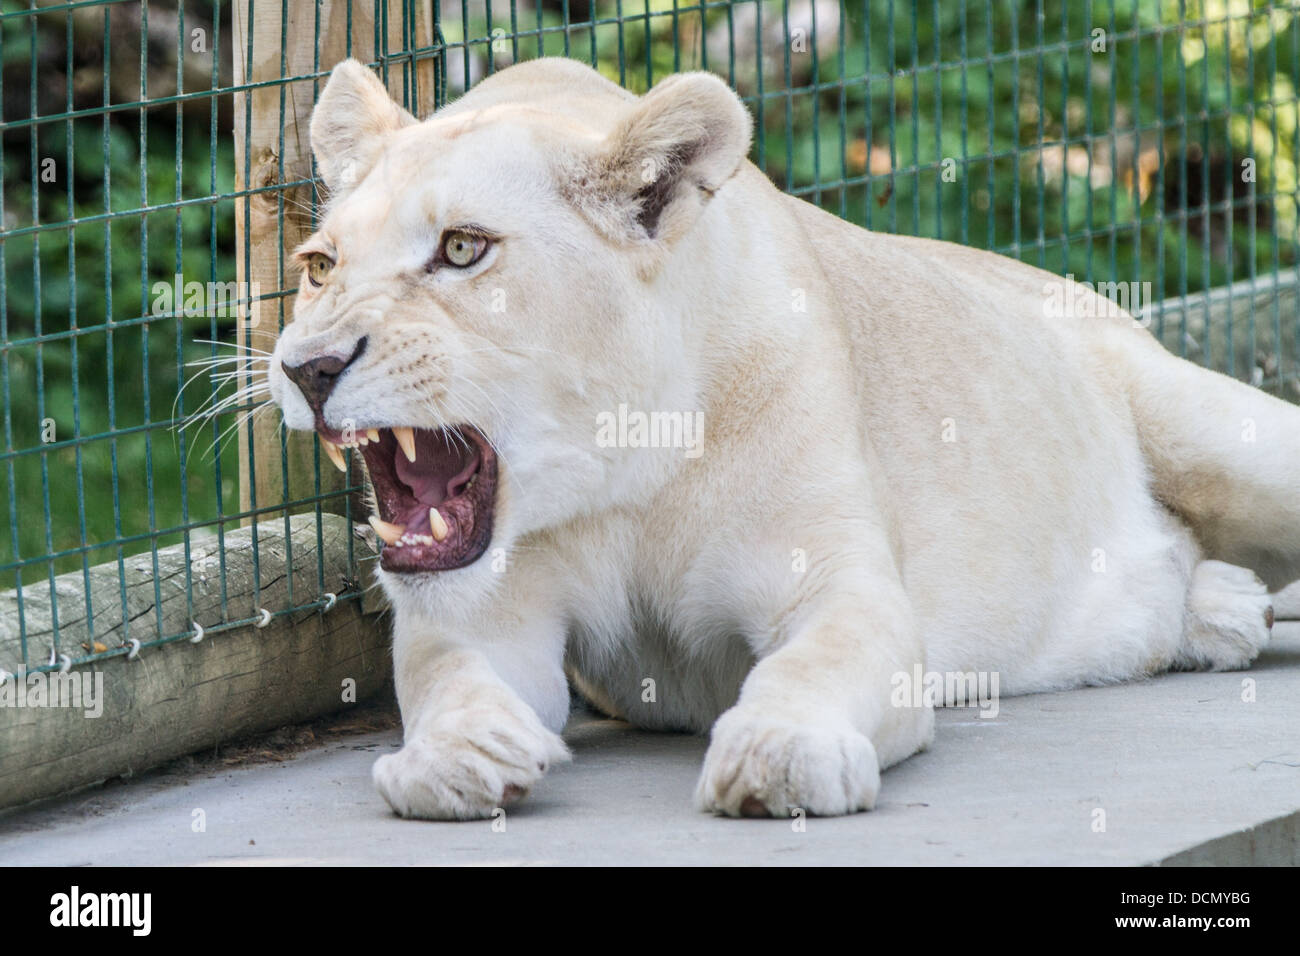 Roaring Lion Blanc femelle, cages dans le Zoo. Banque D'Images